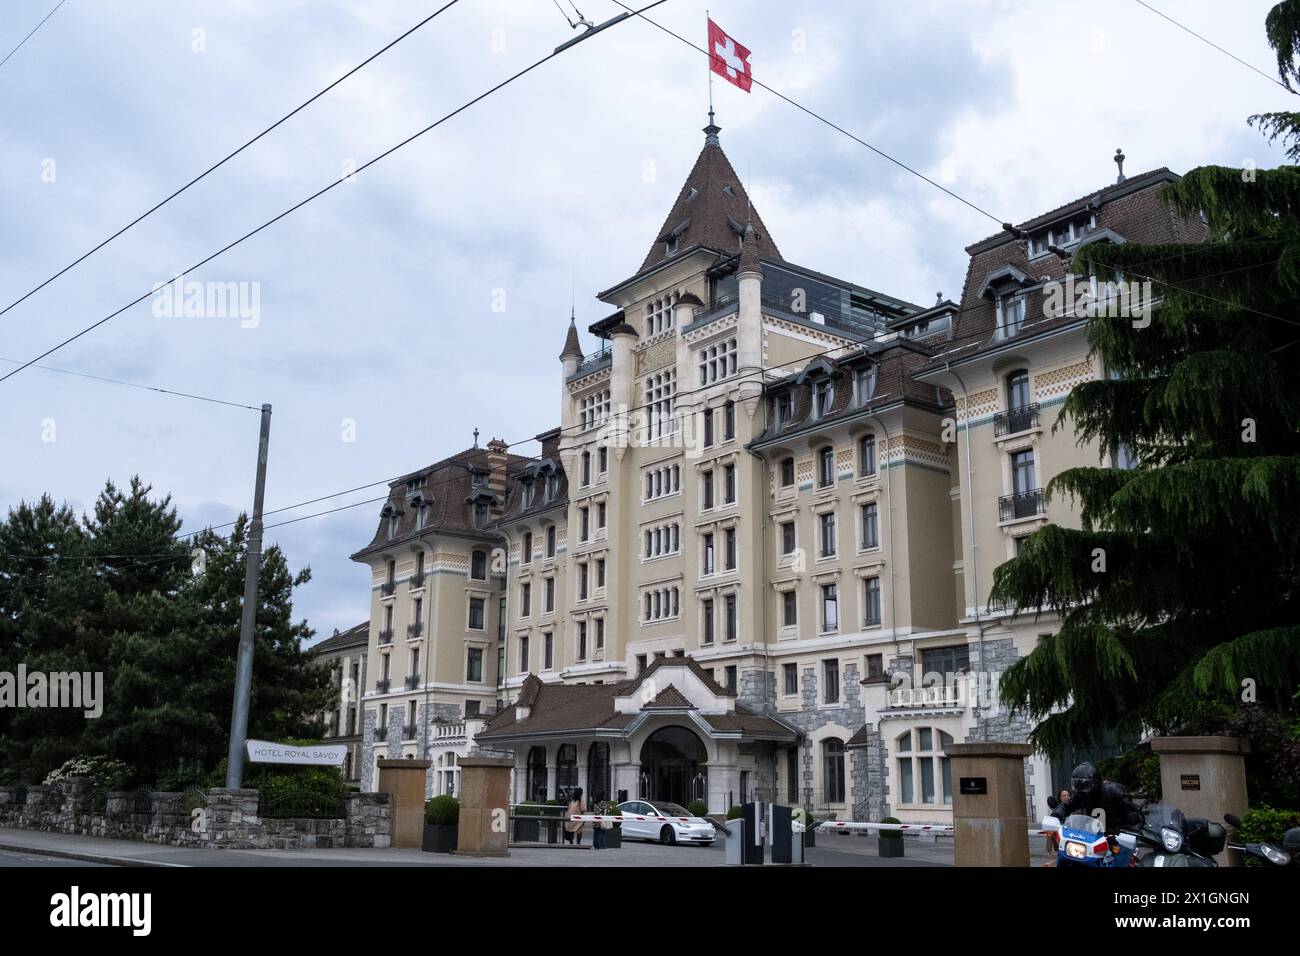 Hotel Royal Savoy Lausanne en Suisse le 19 mai 2023. Lausanne est une ville suisse situee sur la rive nord du lac Leman, capitale du canton de Vaud. Stock Photo